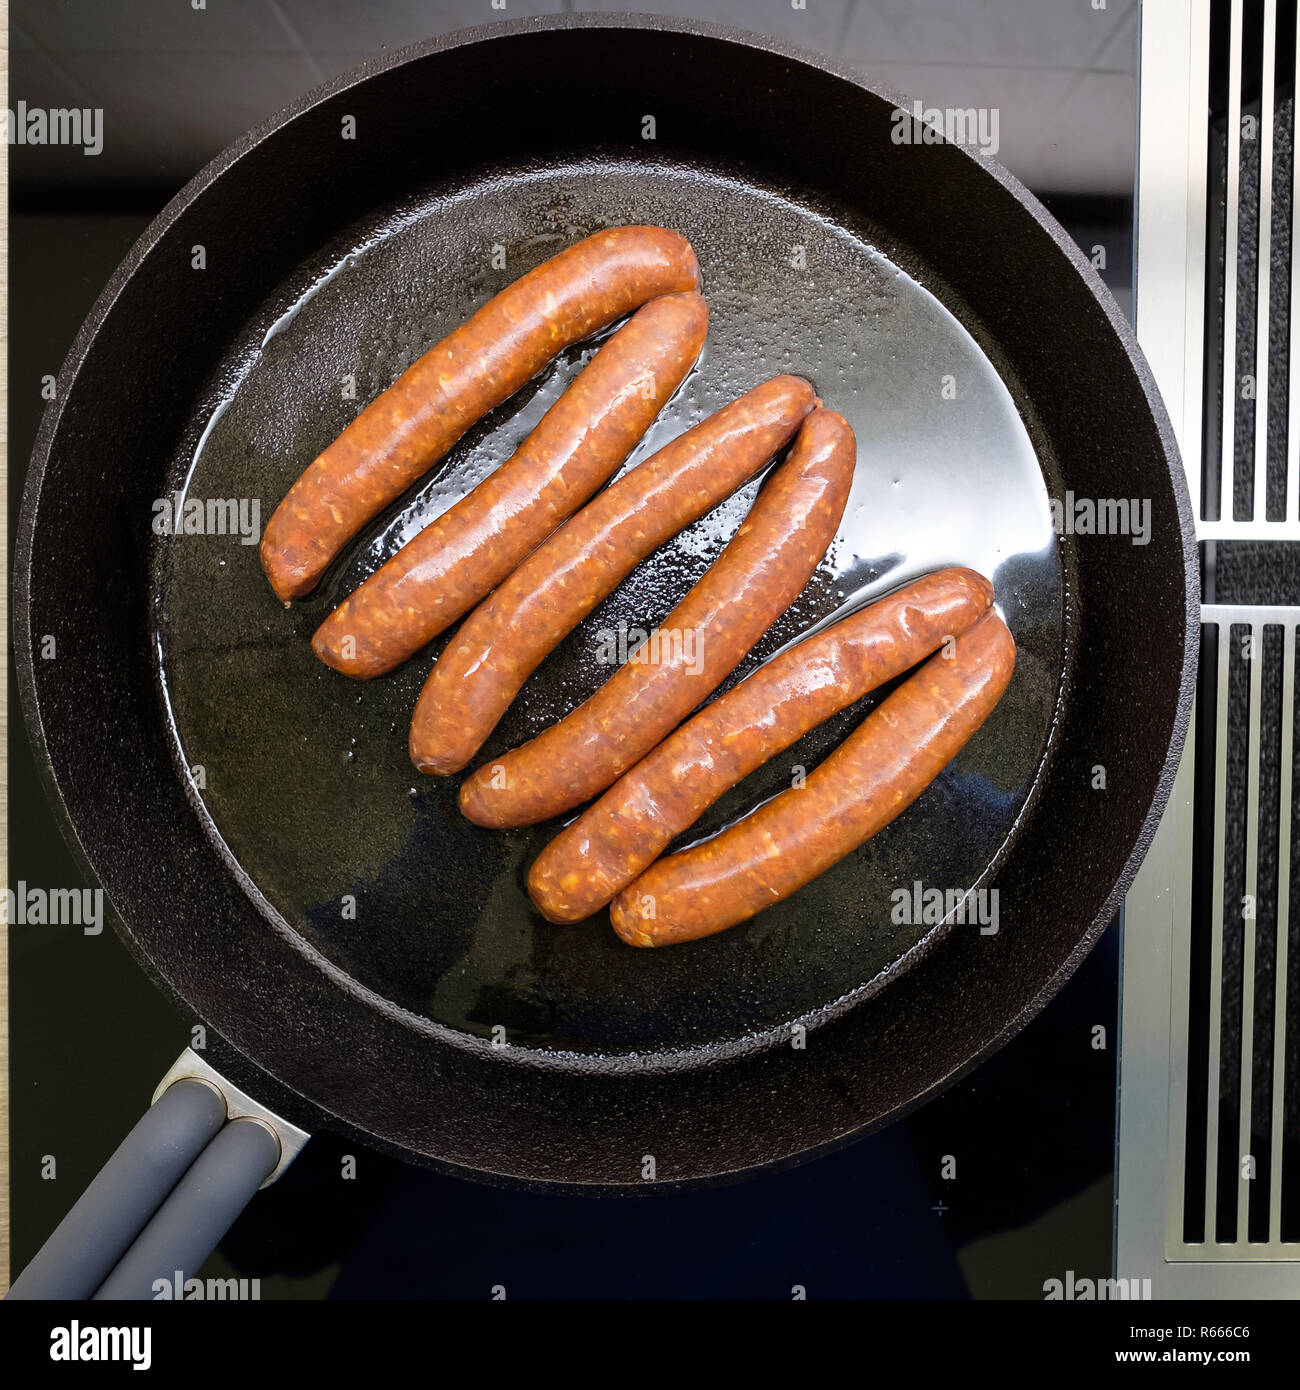 Vue de dessus de saucisses frites merquez dans une casserole sur la cuisinière Banque D'Images